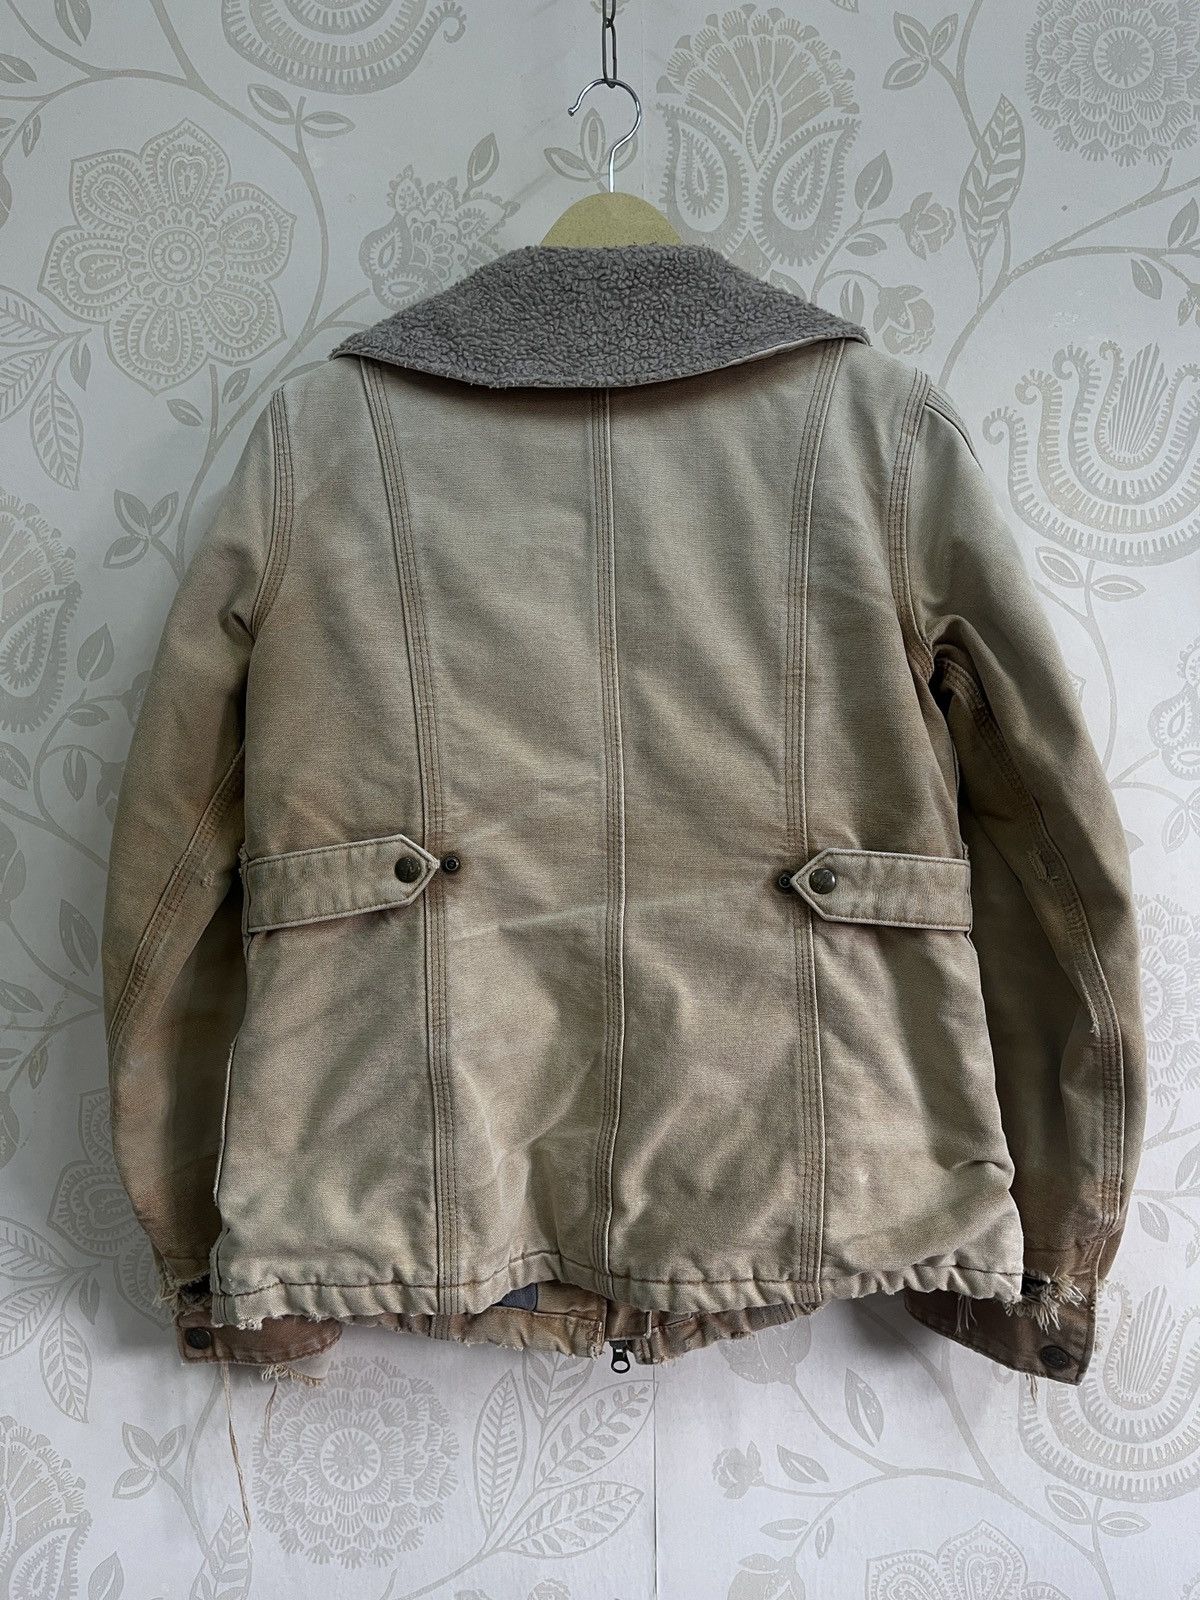 Vintage - Carhartt Blanket Jacket Distressed Workers Denim Jacket - 4